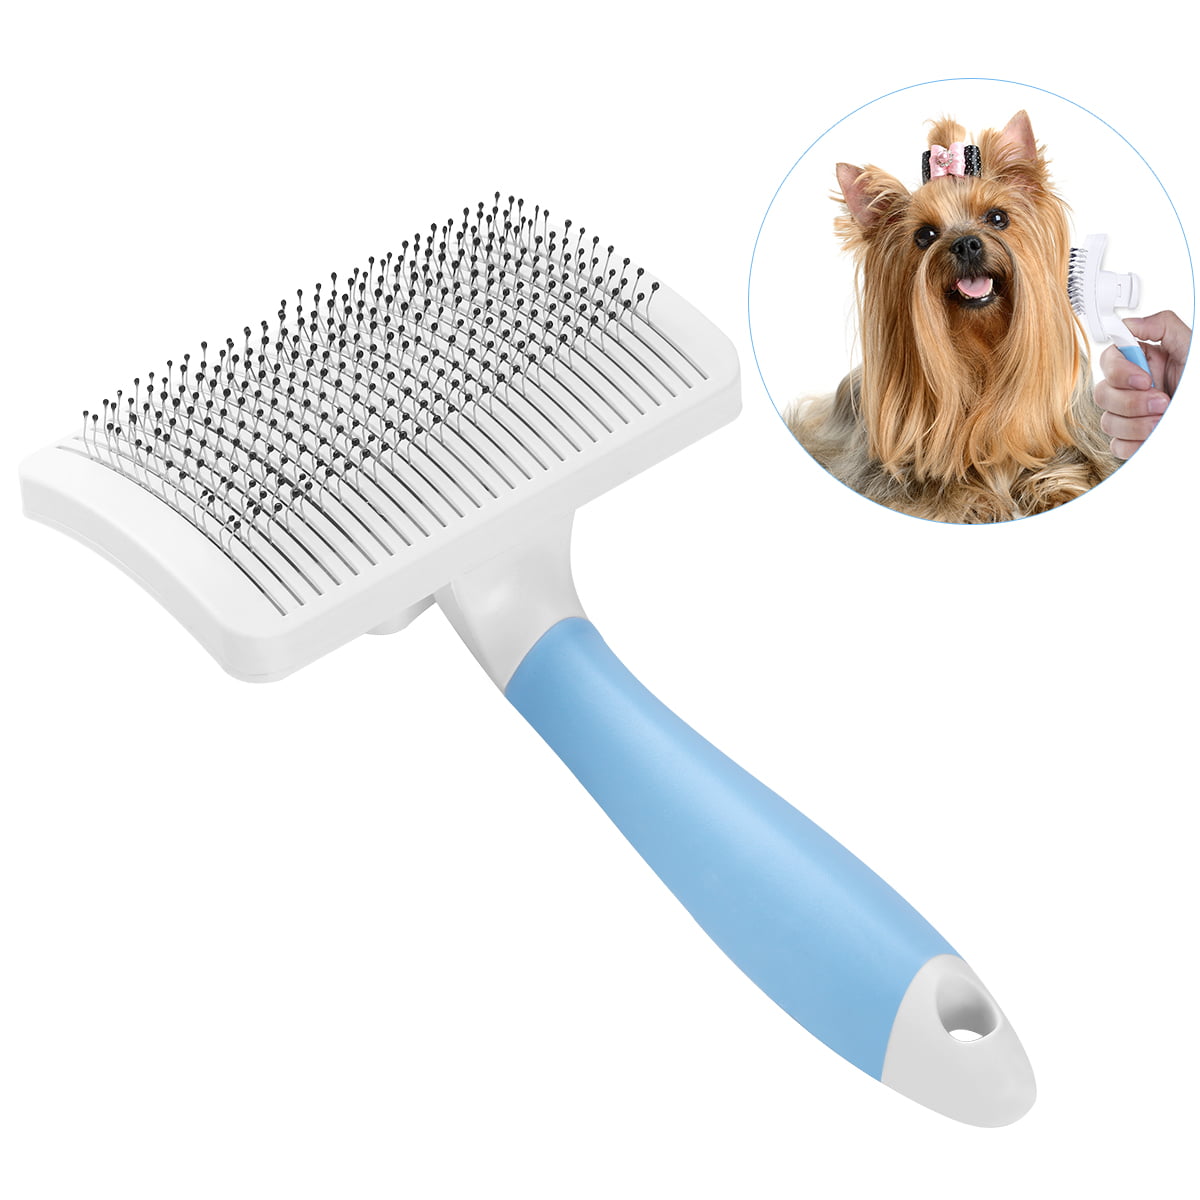 Ueetek Dog/Cat/Pet Slicker Brush for Long and Short Hair